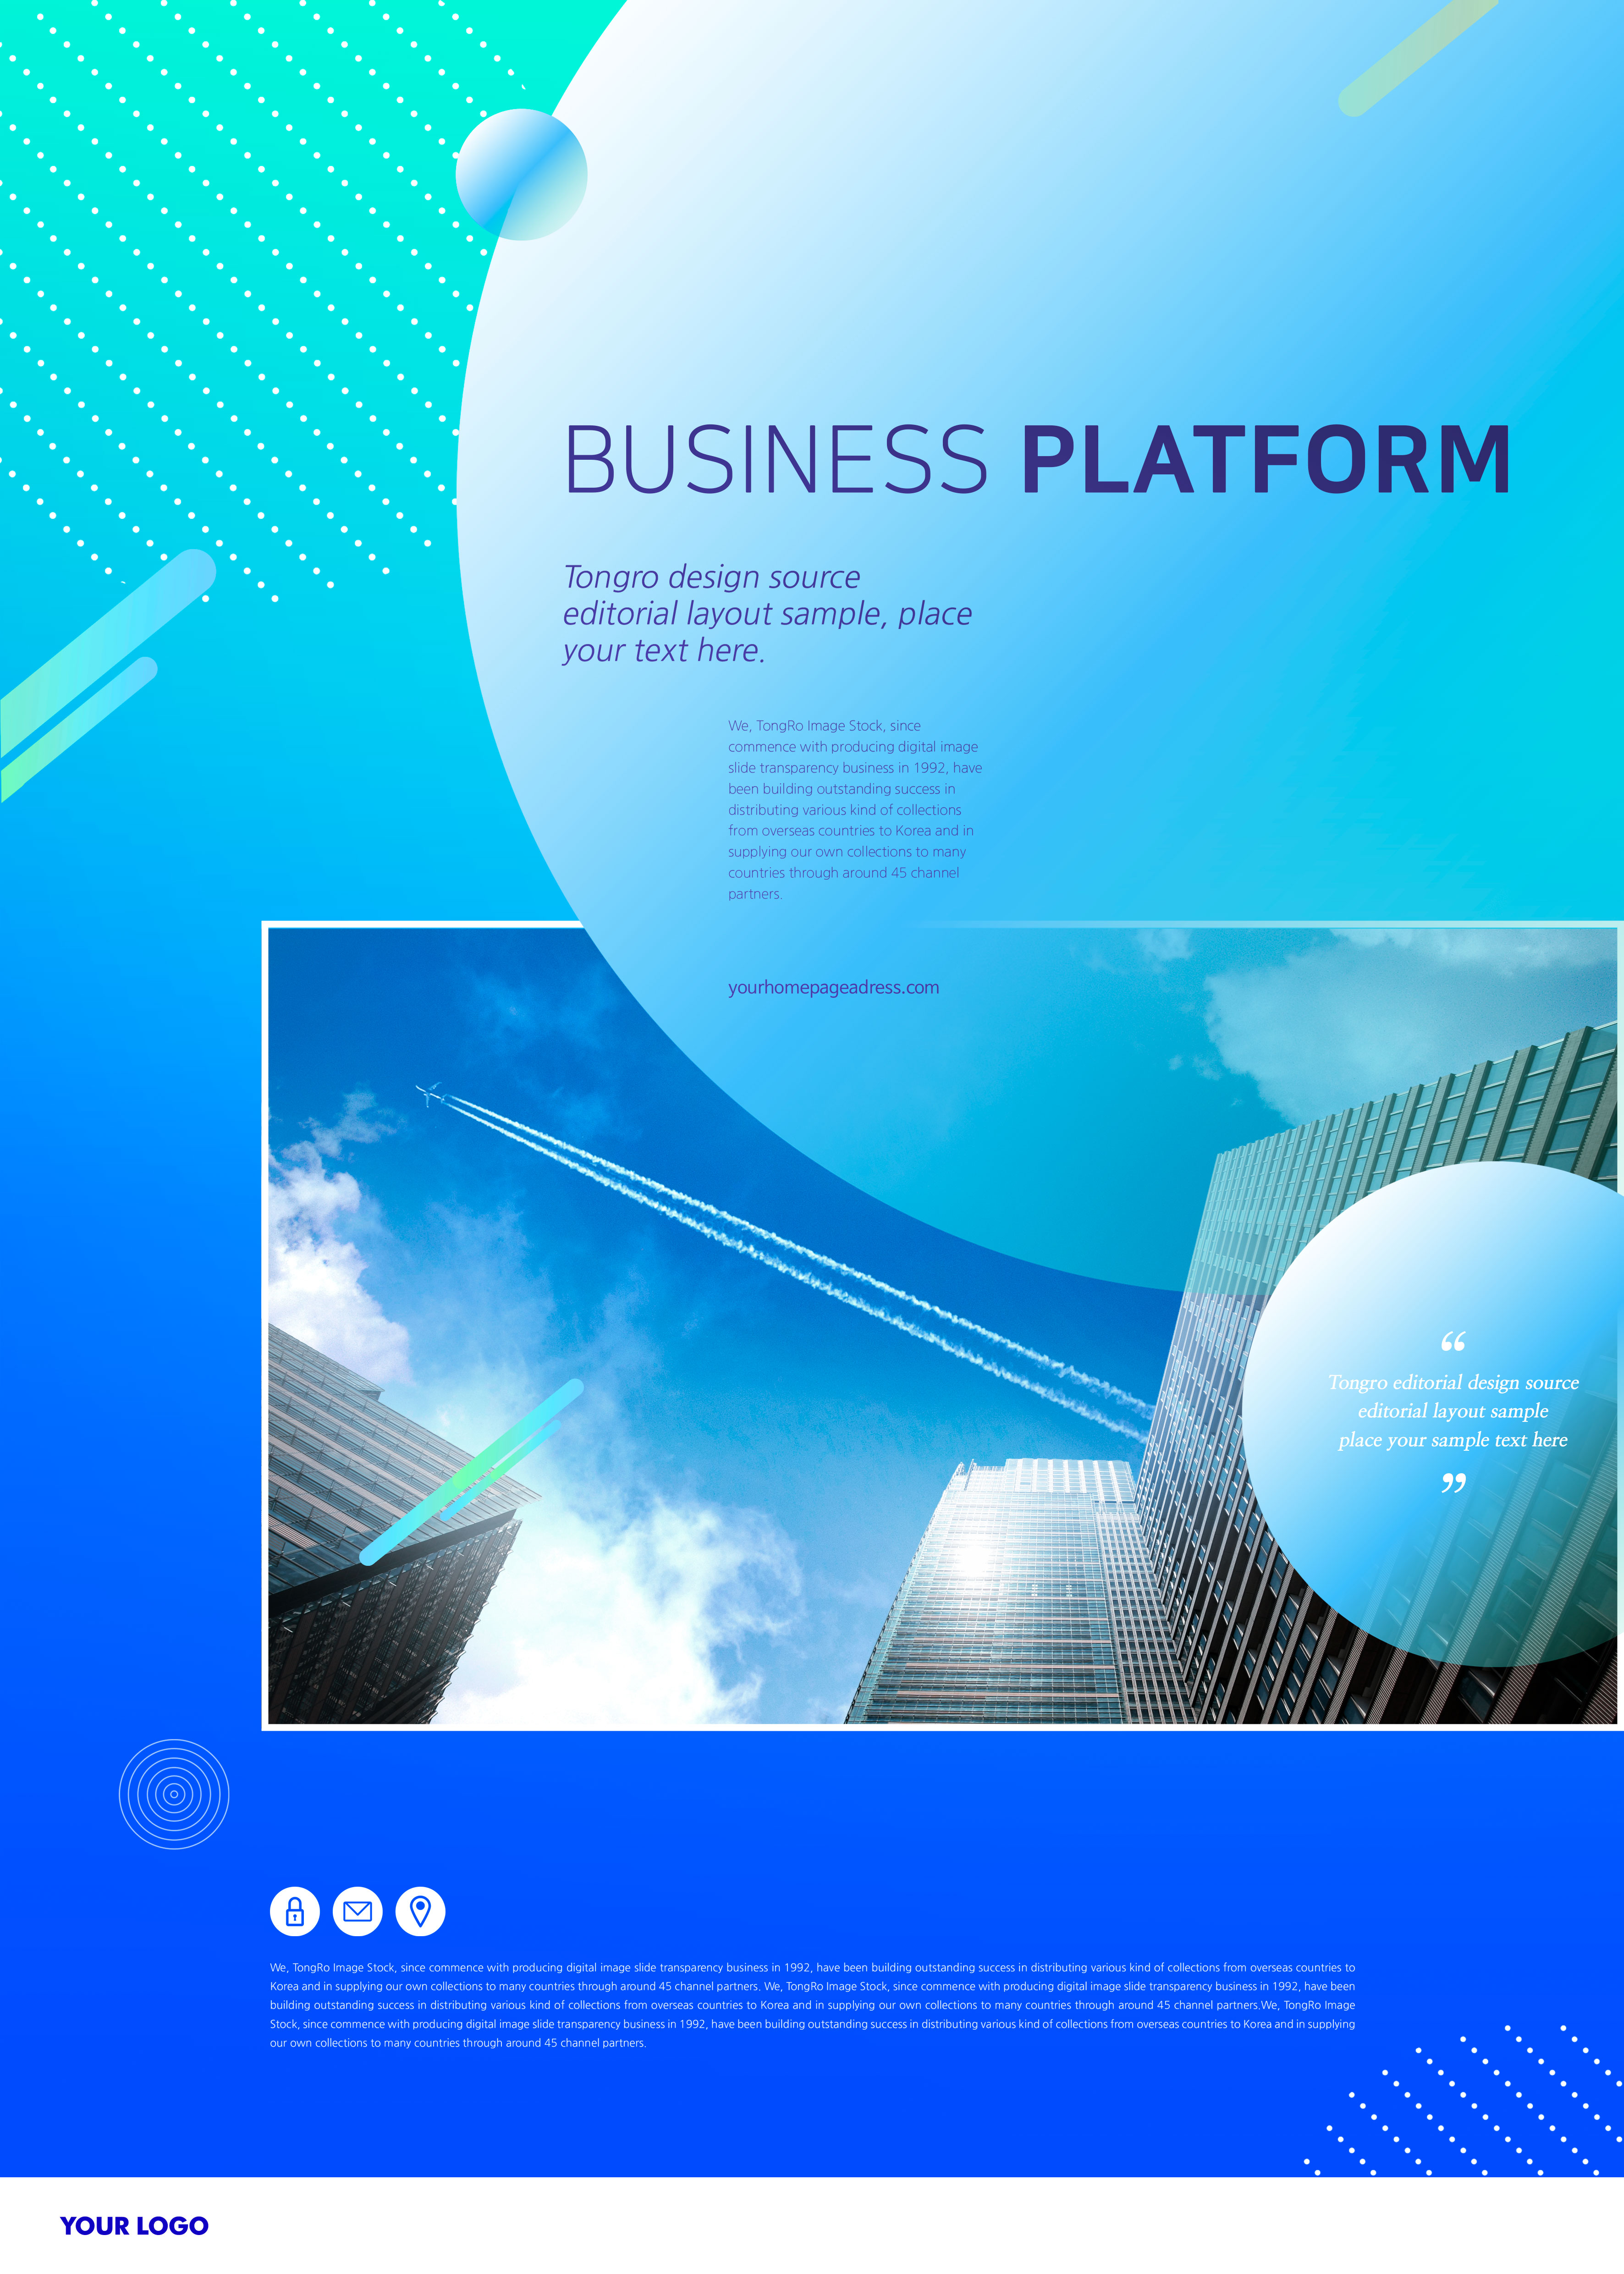 商业平台企业主题海报模板套装[PSD]插图(1)